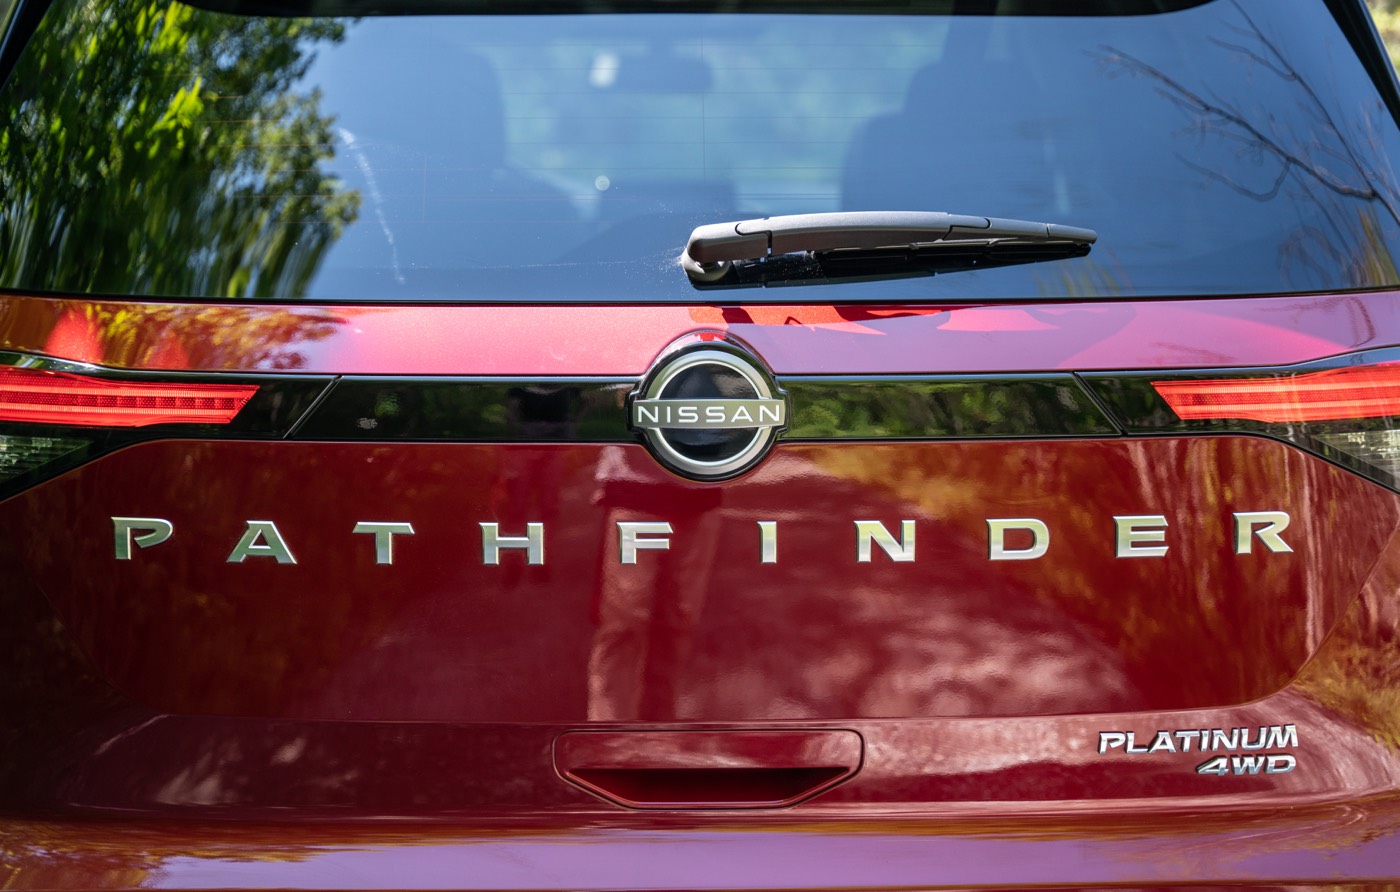 Les lettres PATHFINDER et PLATINUM 4WD imprimées sur la porte du coffre du VUS Nissan